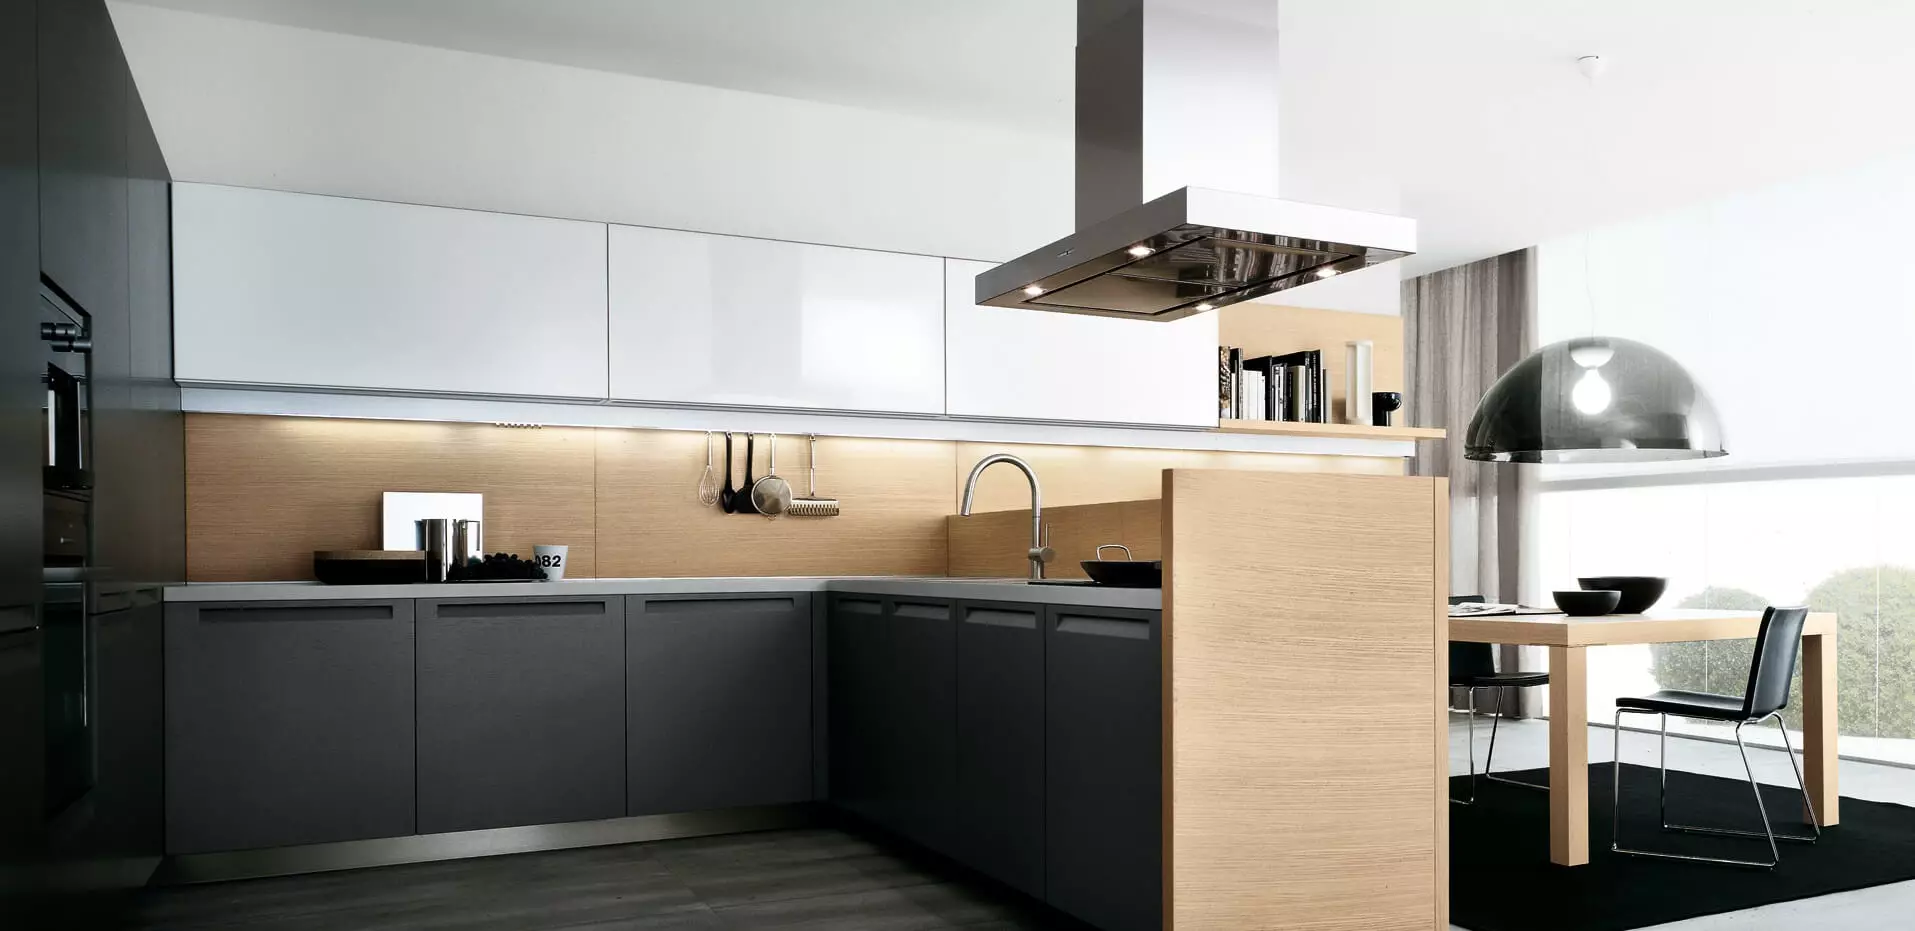 Naon kerak kanggo milih interior dapur modern?